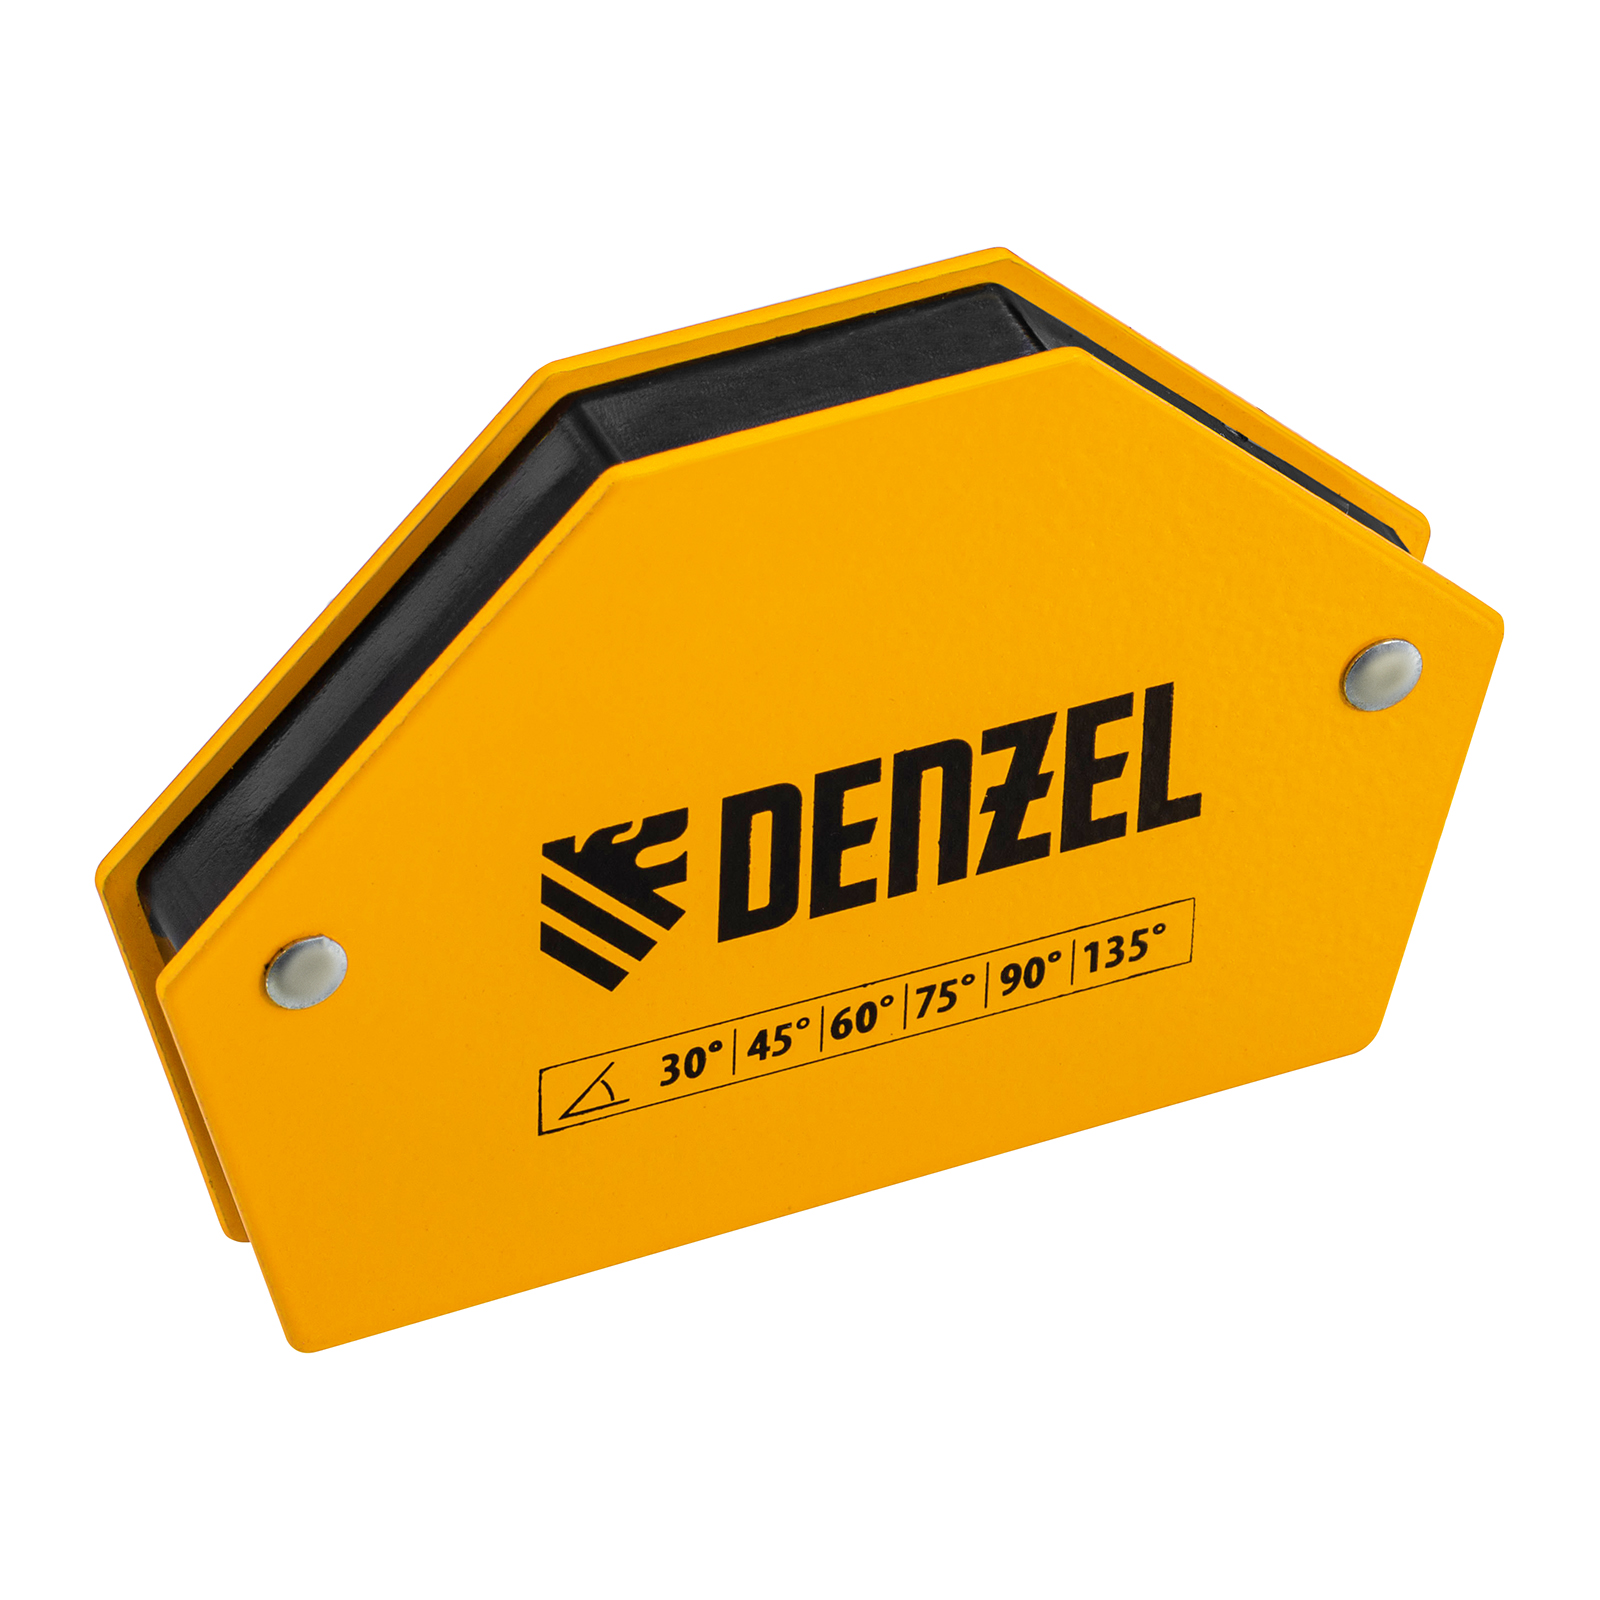 Фиксатор магнитный для сварочных работ DENZEL усилие 25 LB, 30х45х60х75х90х135 град. 97552 магнитный фиксатор асанта